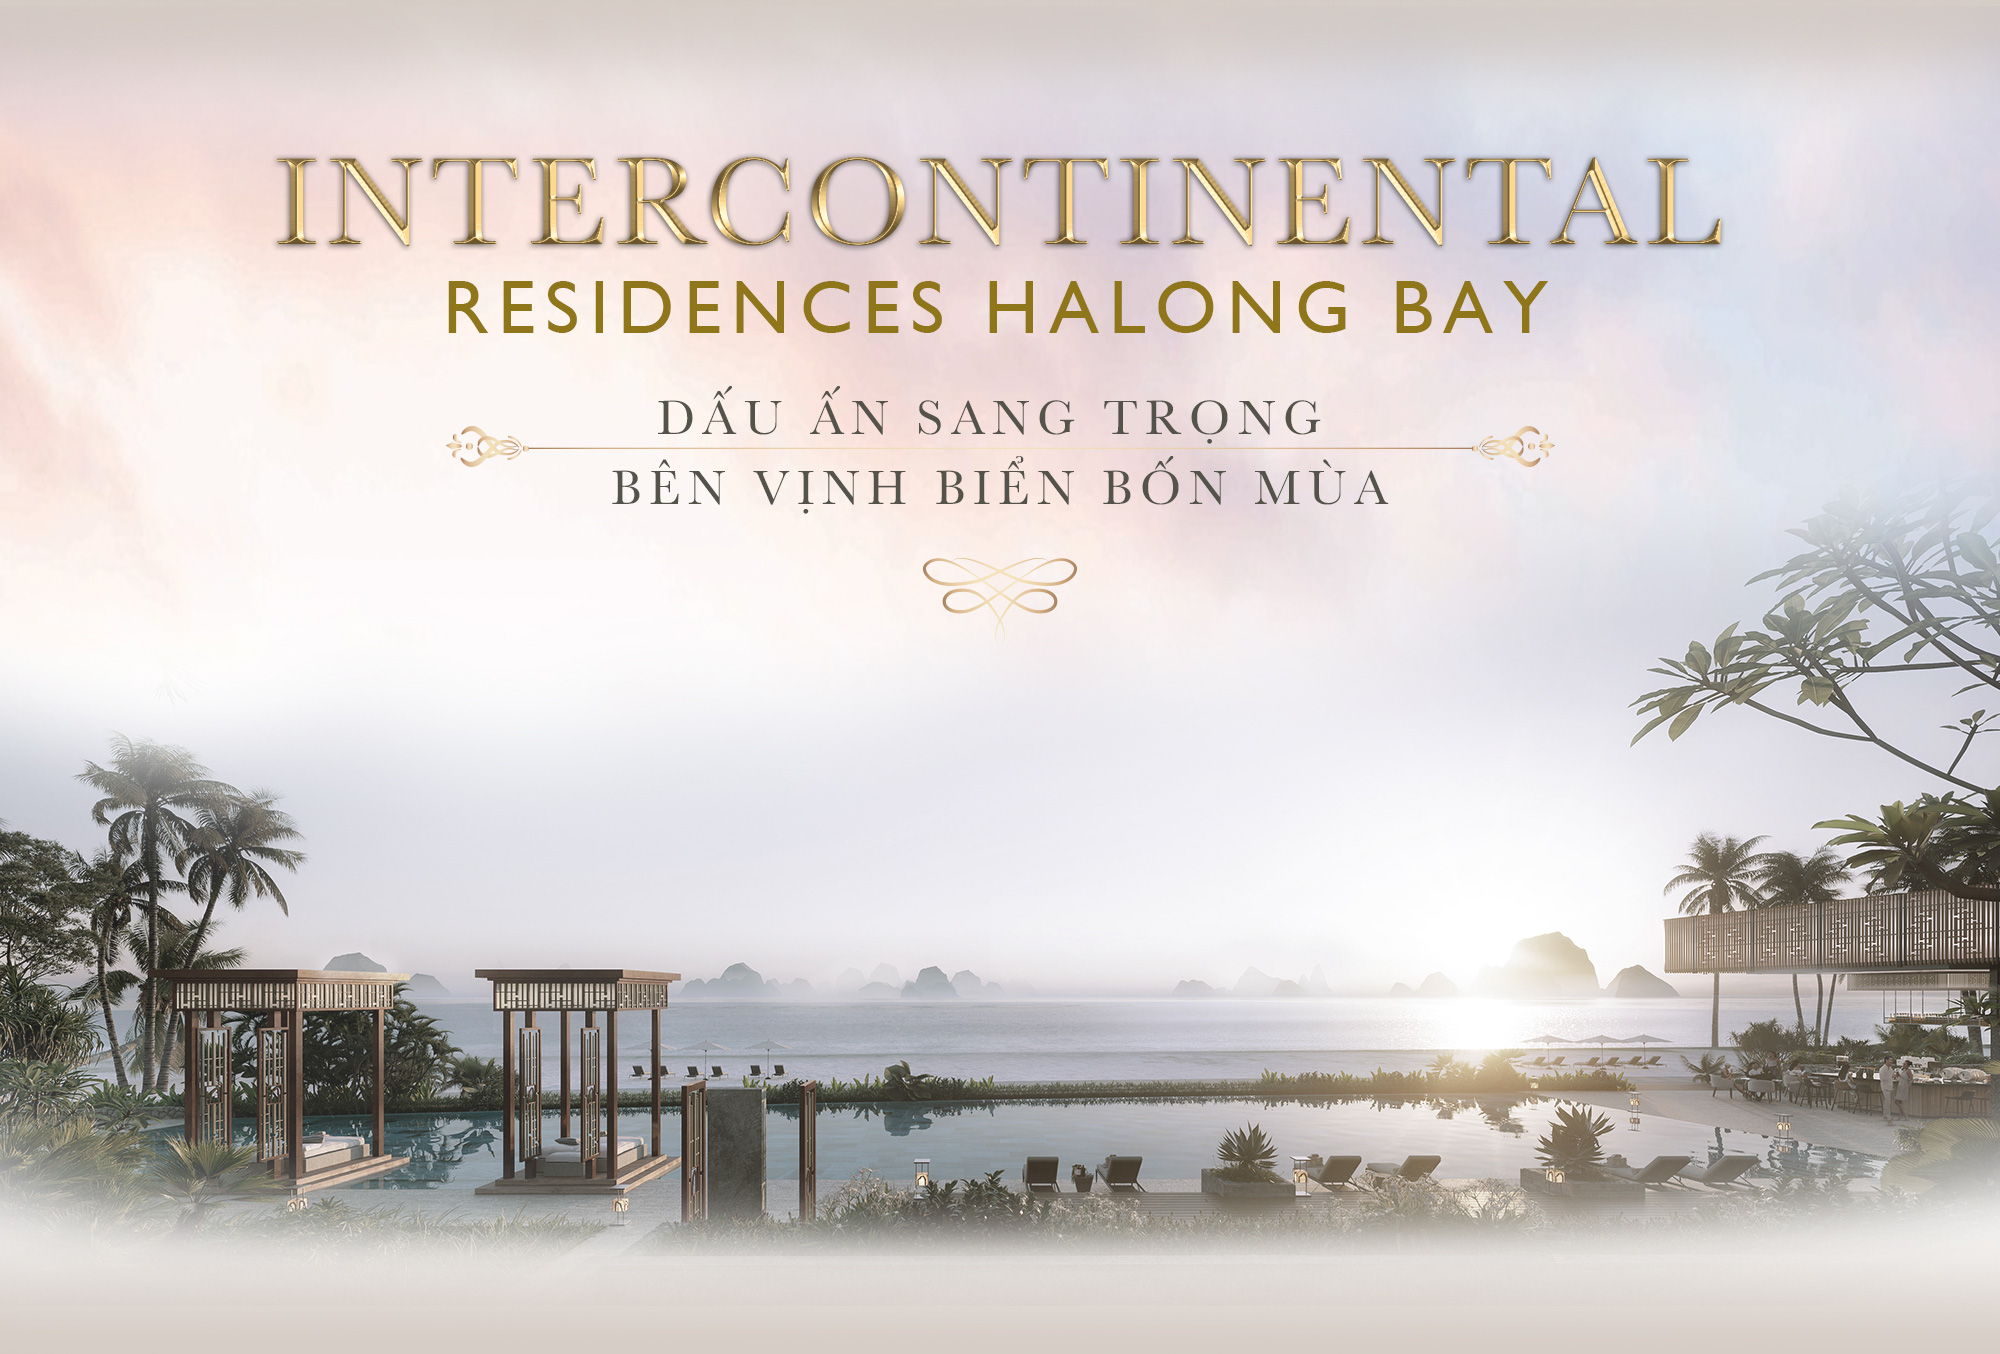 Intercontinental Residences Halong Bay - Dấu ấn sang trọng bên vịnh biển bốn mùa